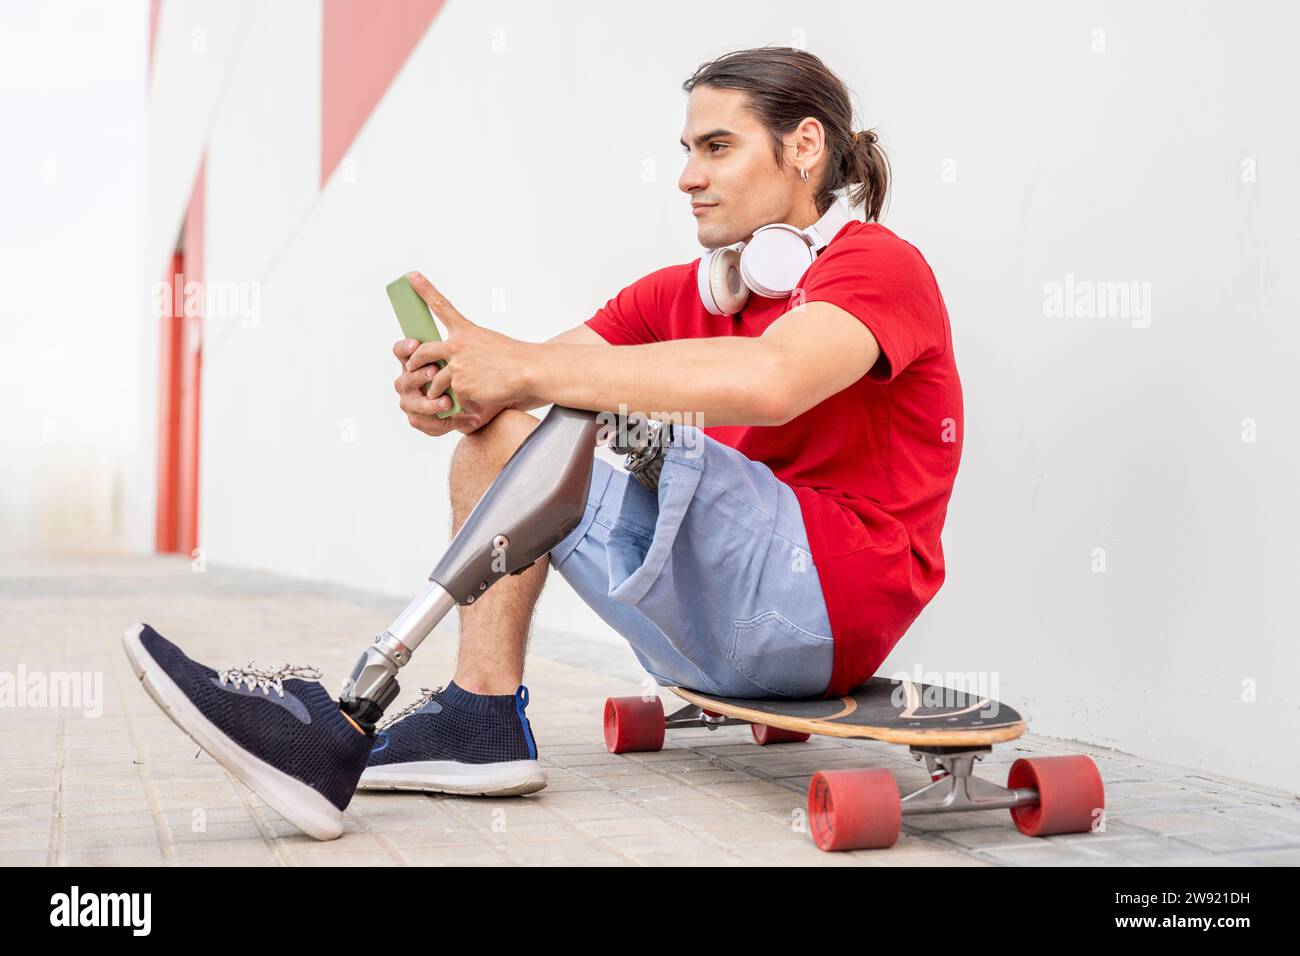 Homme réfléchi avec handicap assis sur le skateboard Banque D'Images